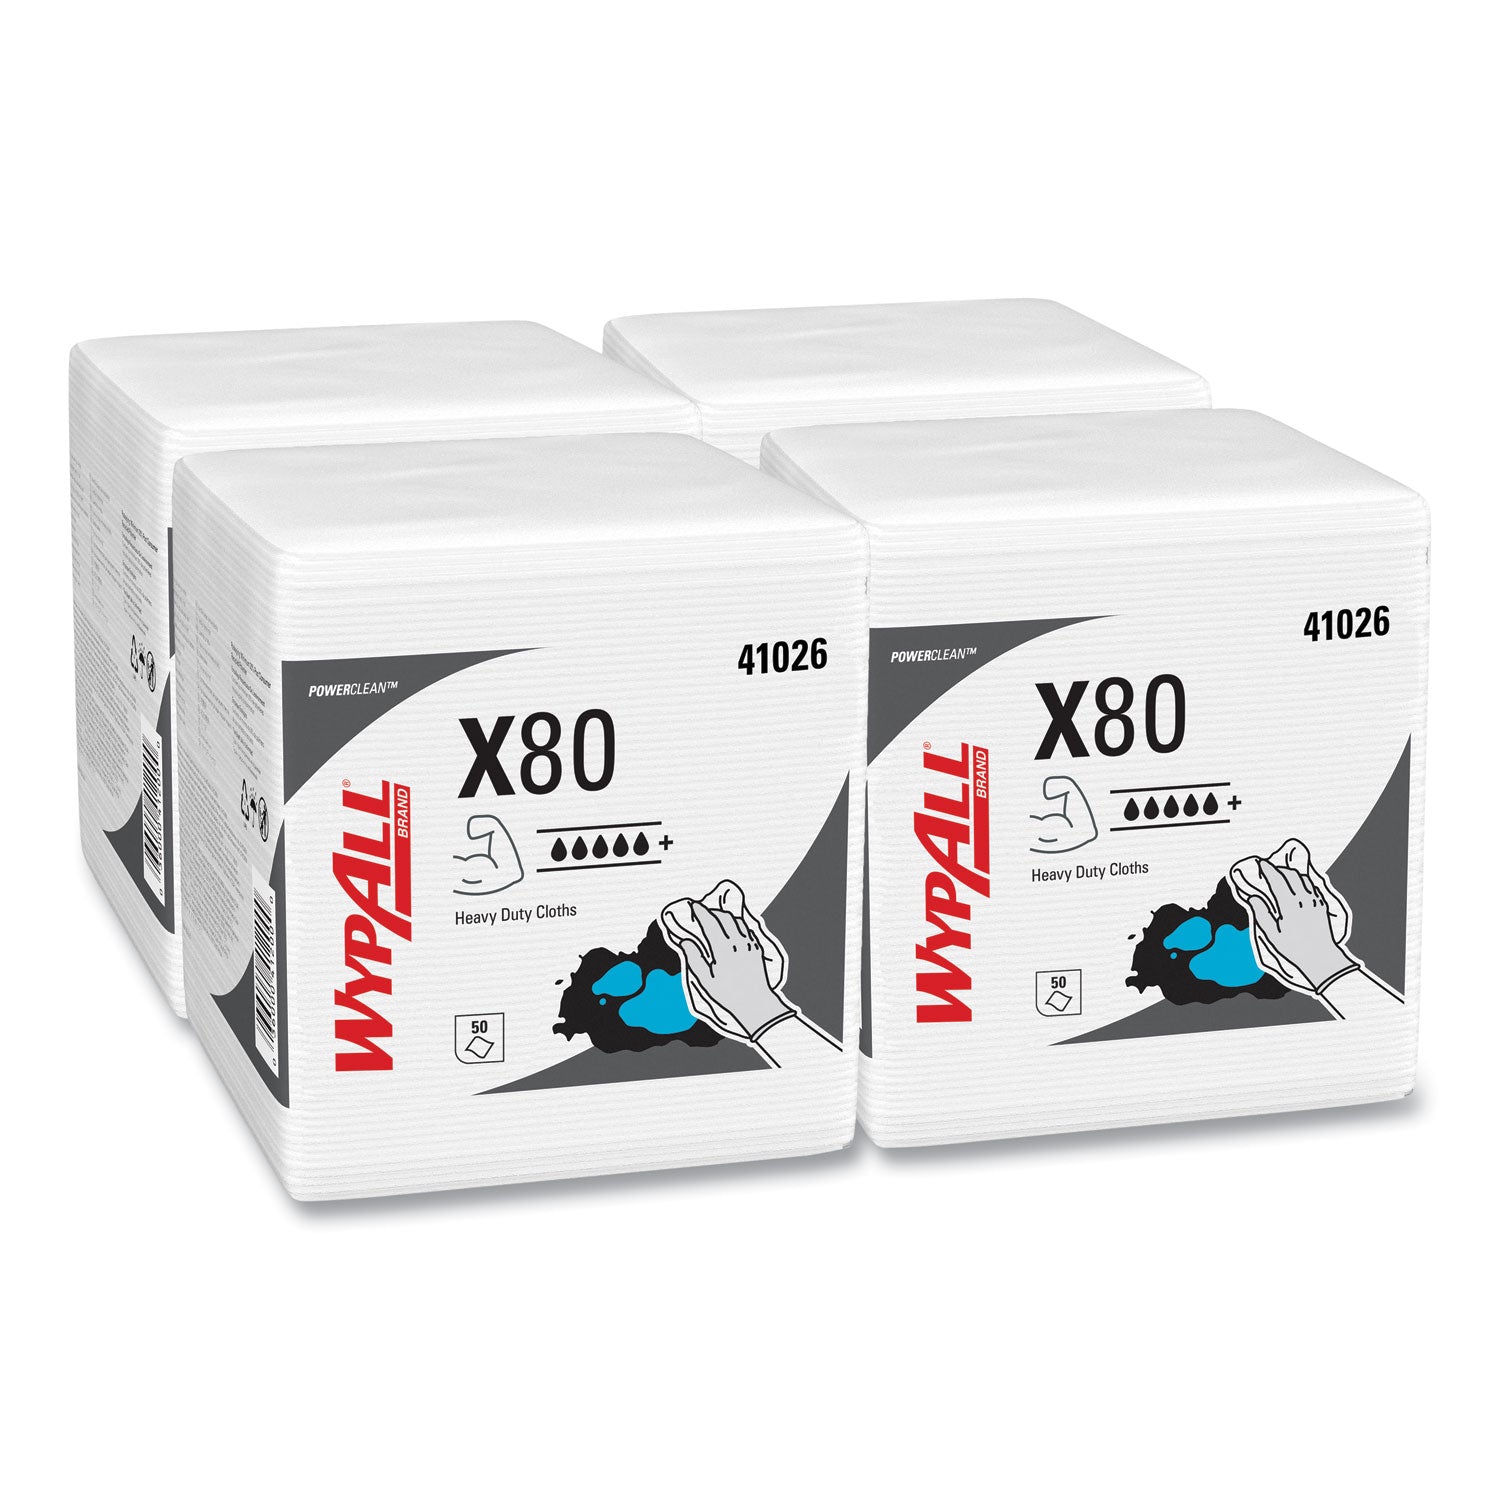 Power Clean X80 Heavy Duty Cloths, 1/4 Fold, 12.5 x 12, White, 50/Box, 4 Boxes/Carton - 